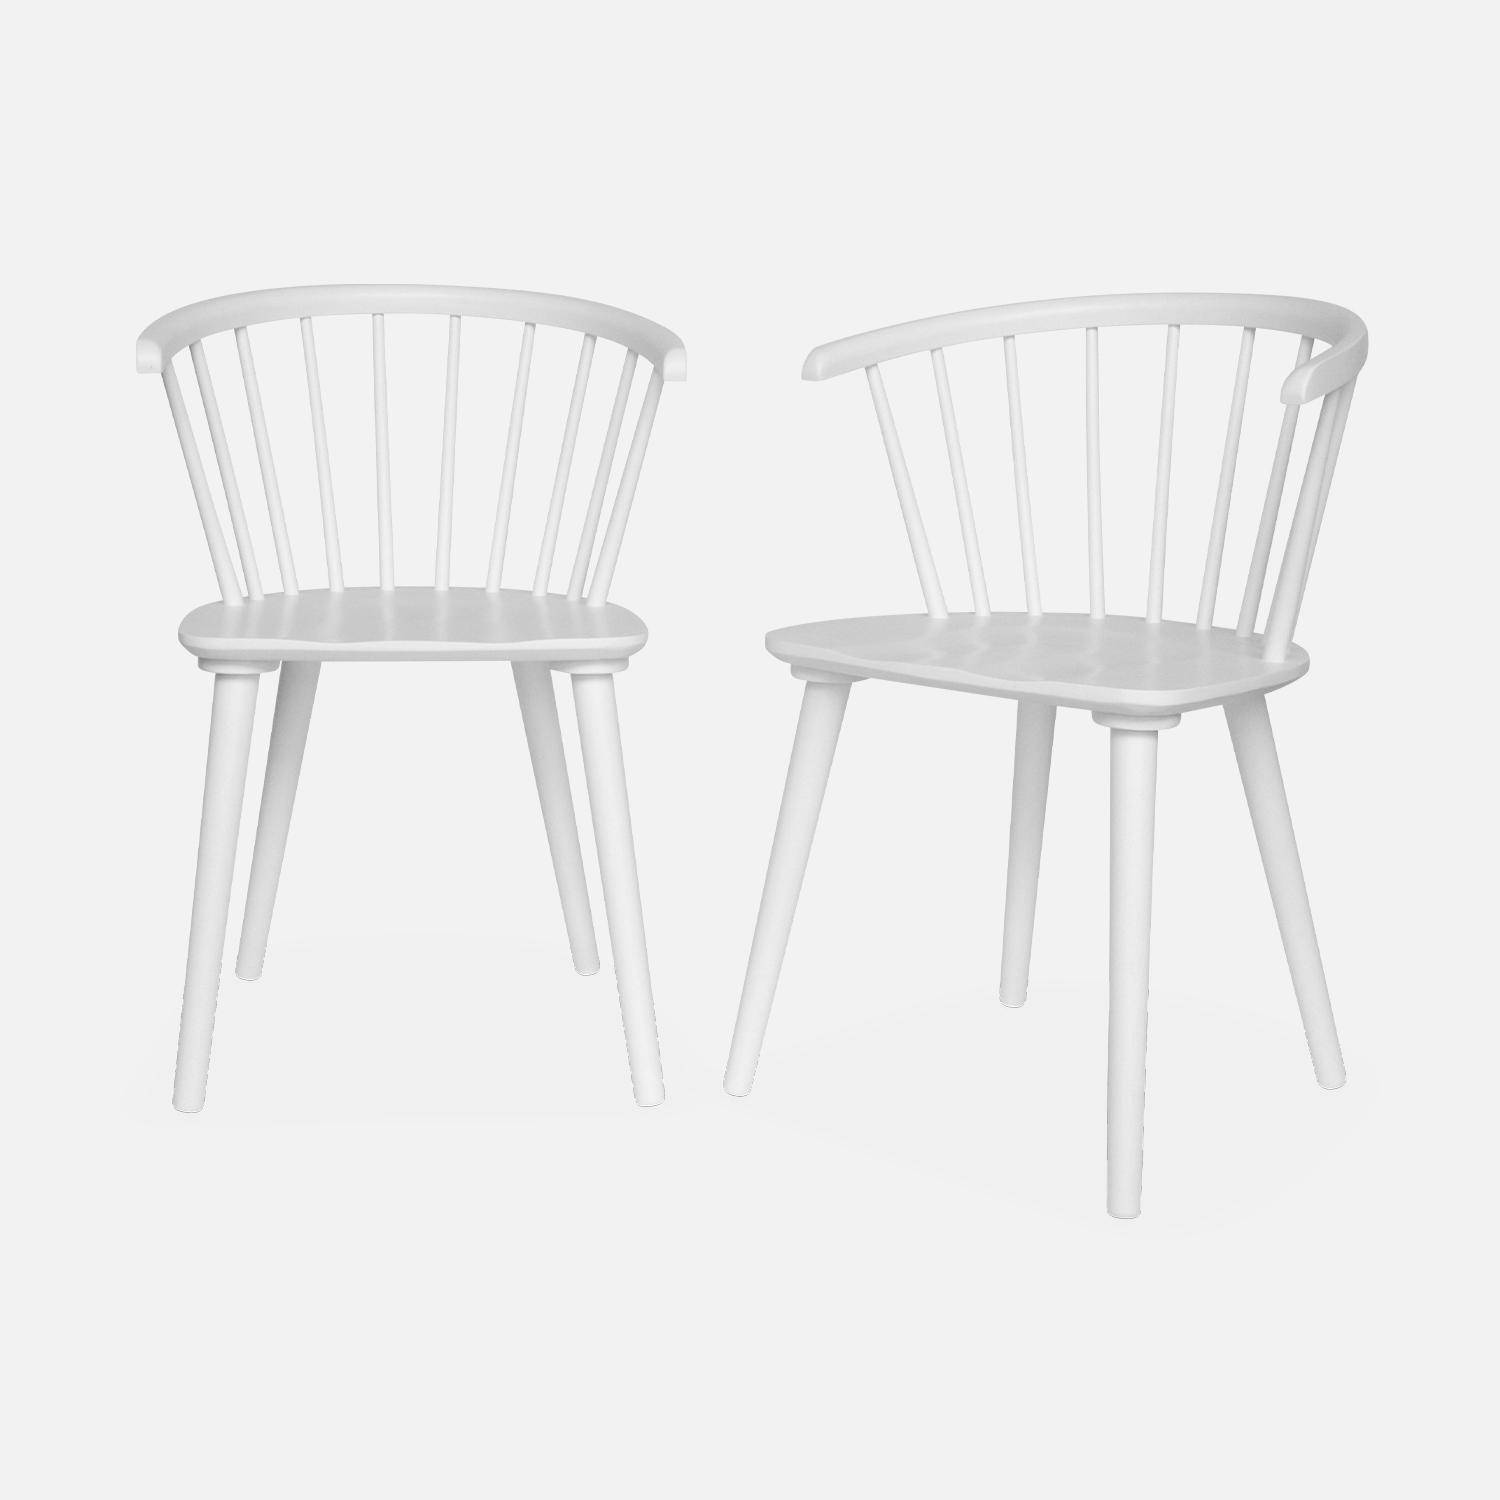 Juego de 2 sillas de bar de madera y contrachapado blanco, Paula, An 51 x Pr 53 x Al 75cm Photo3